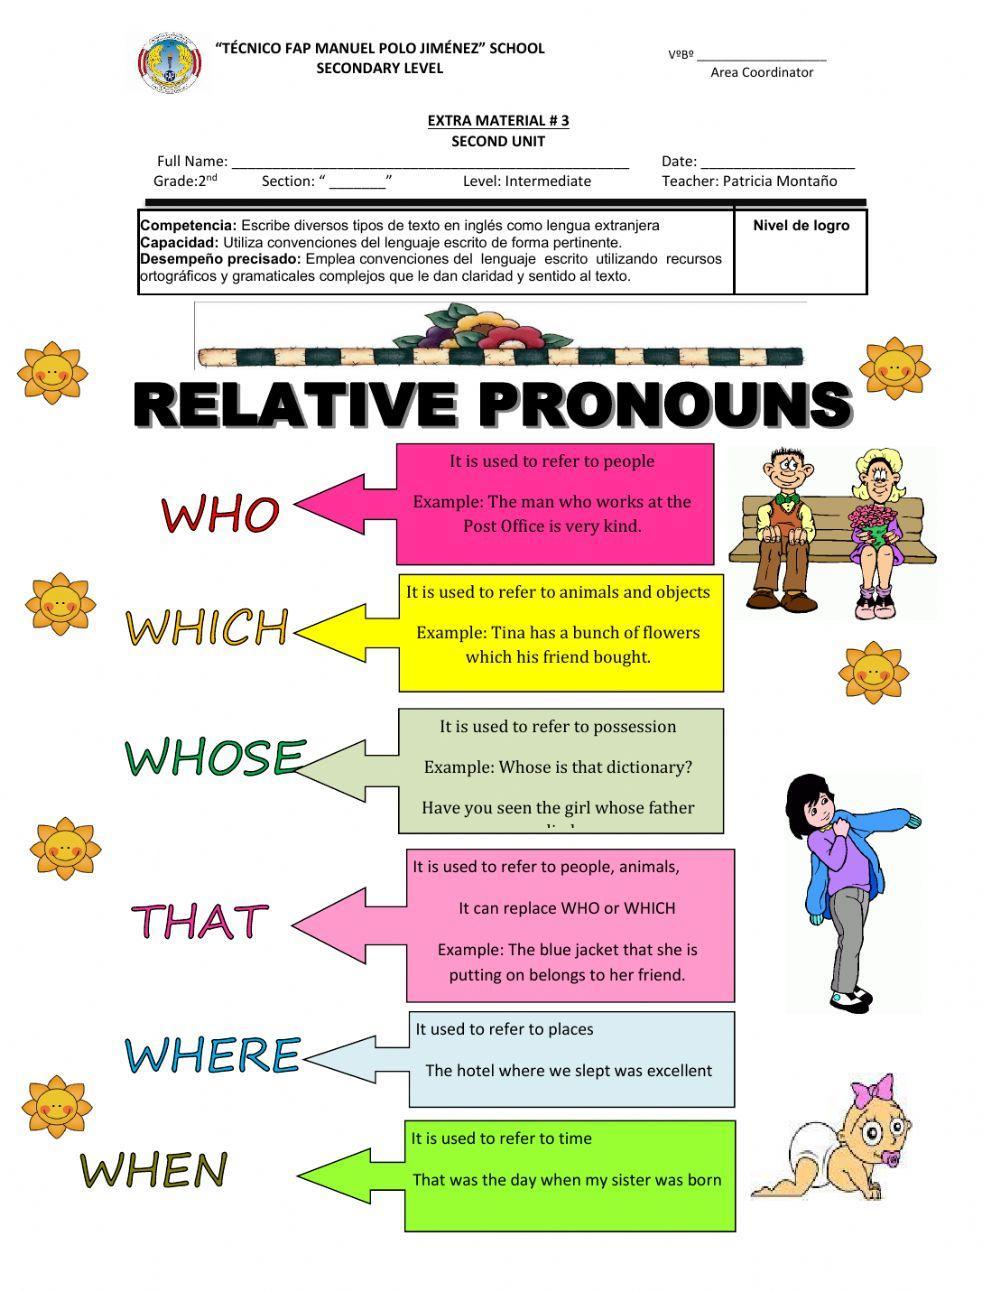 Relative pronouns